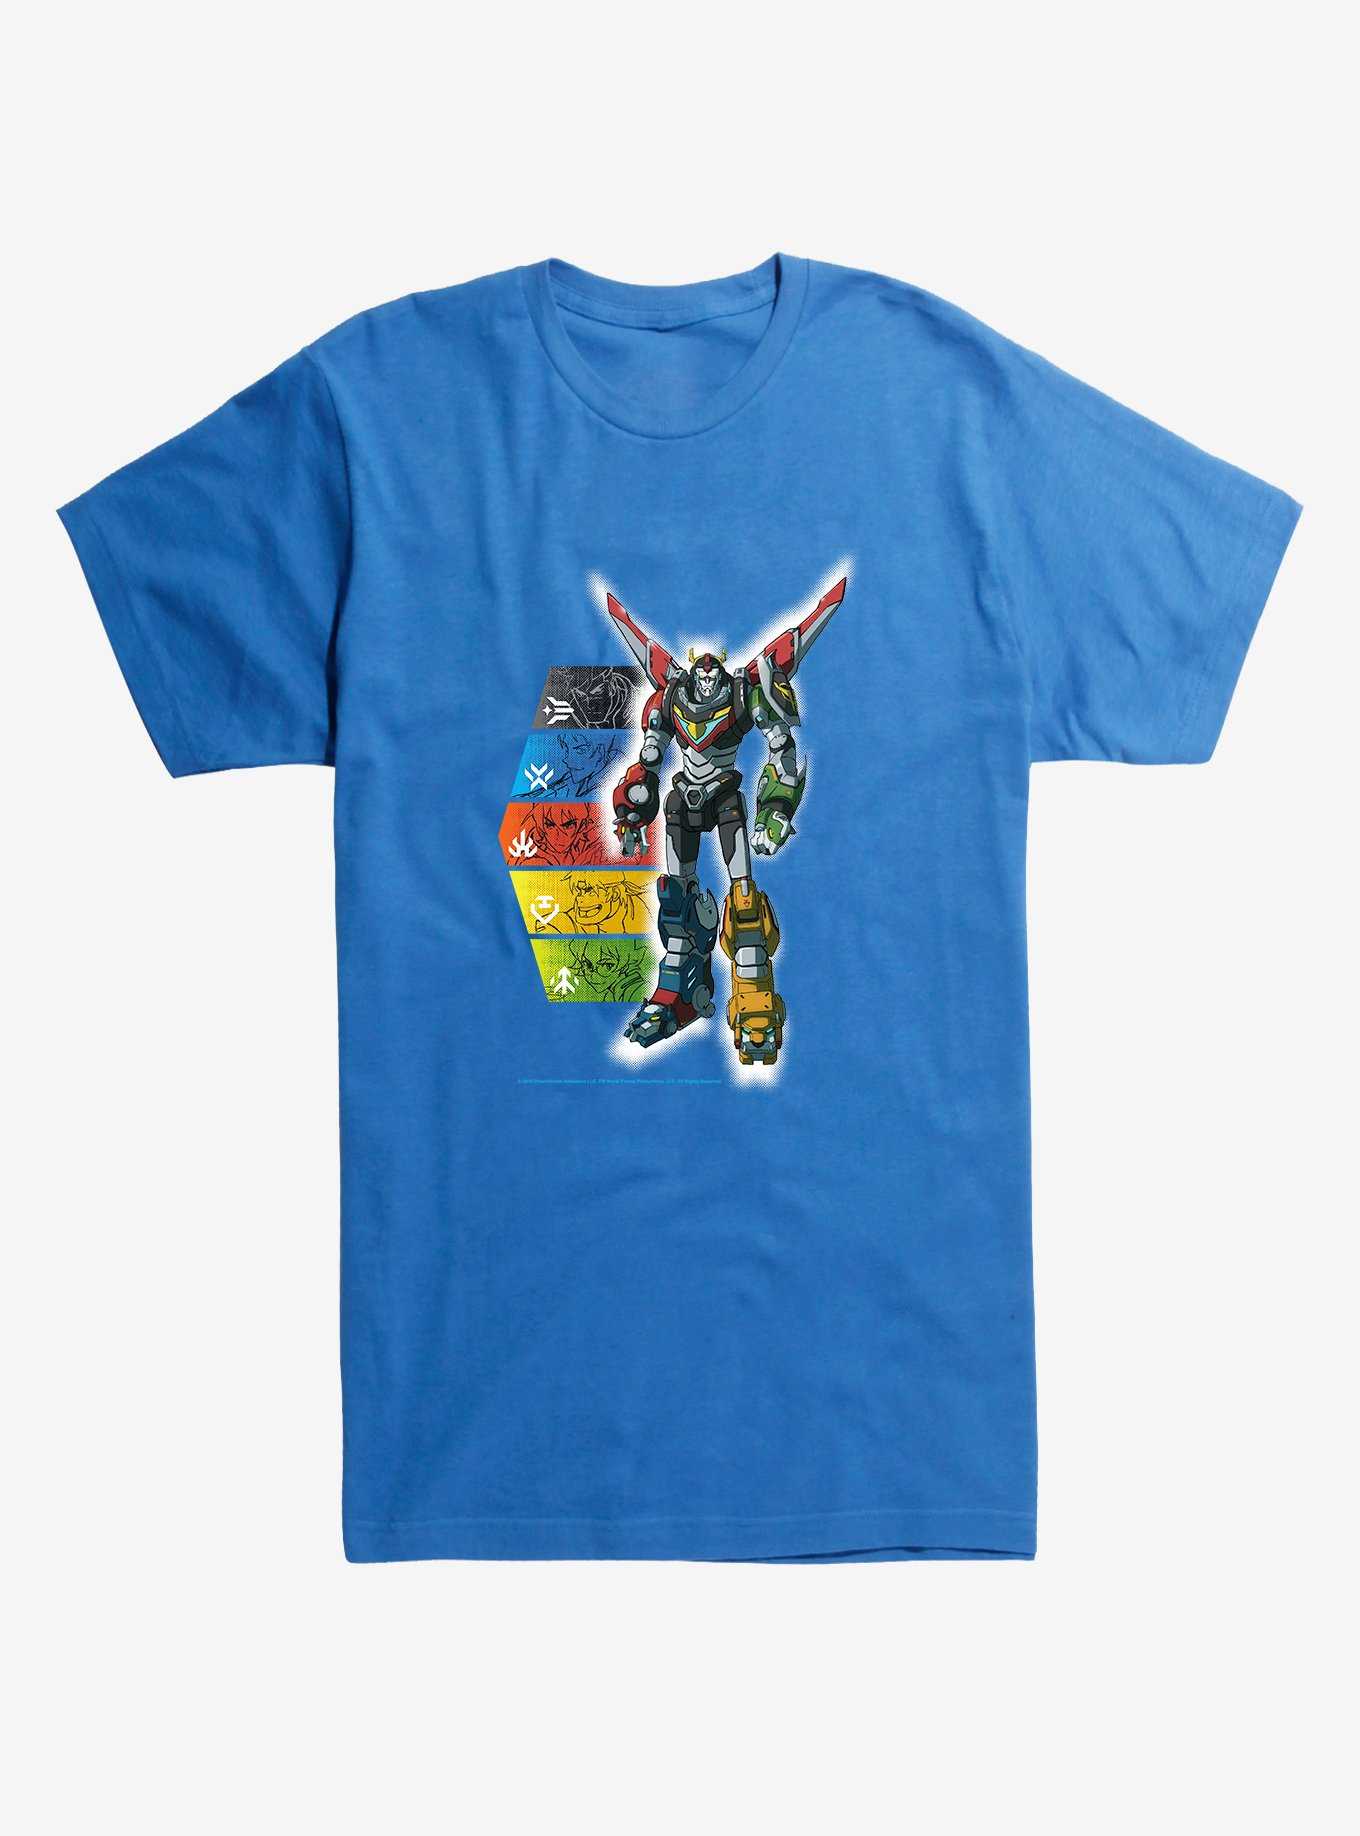 Voltron Super Robot T-Shirt, , hi-res